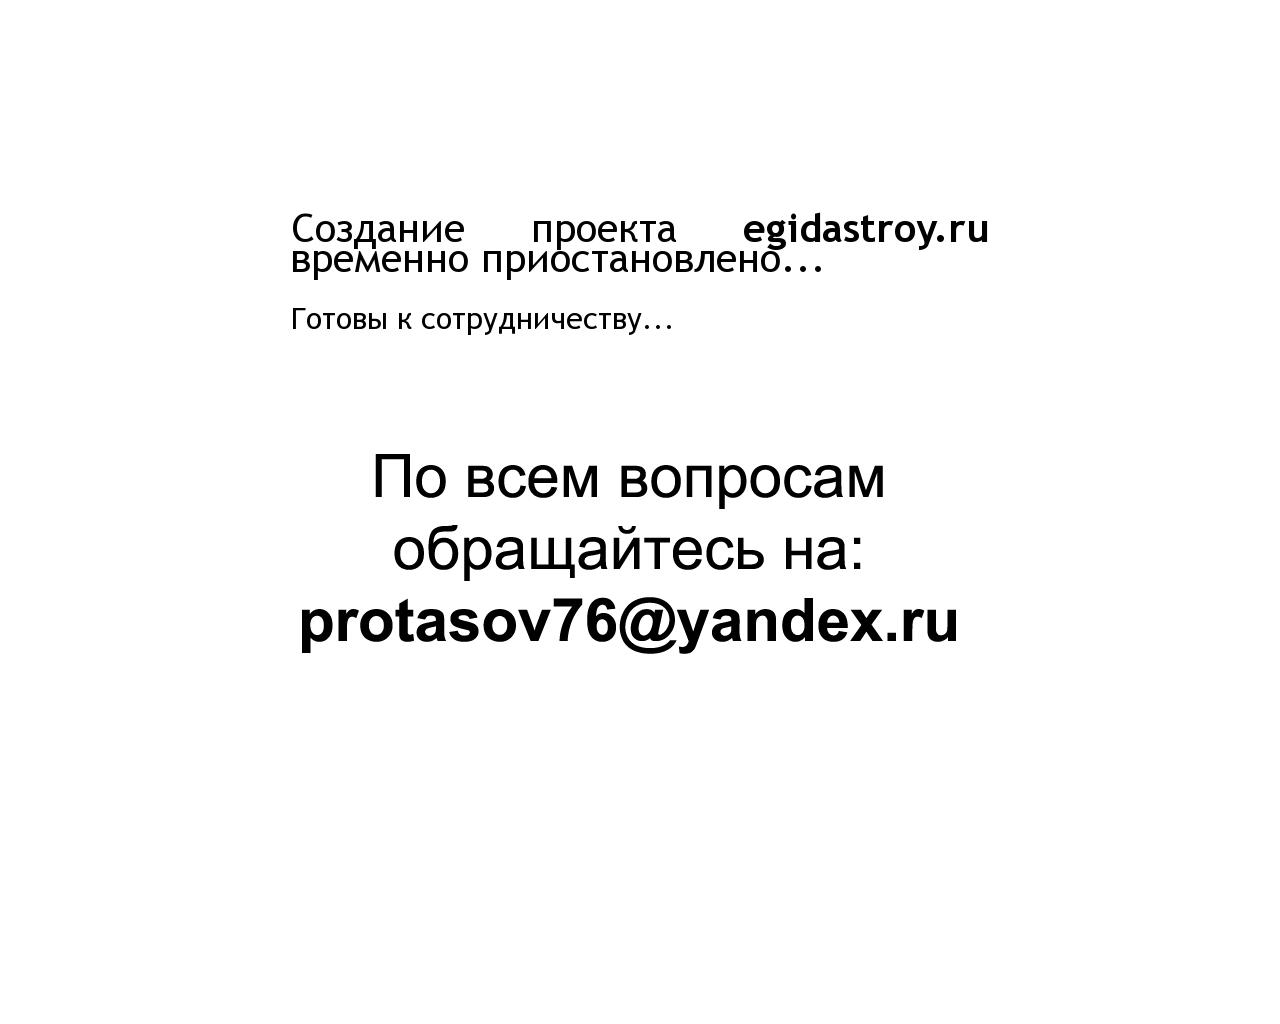 Изображение сайта egidastroy.ru в разрешении 1280x1024